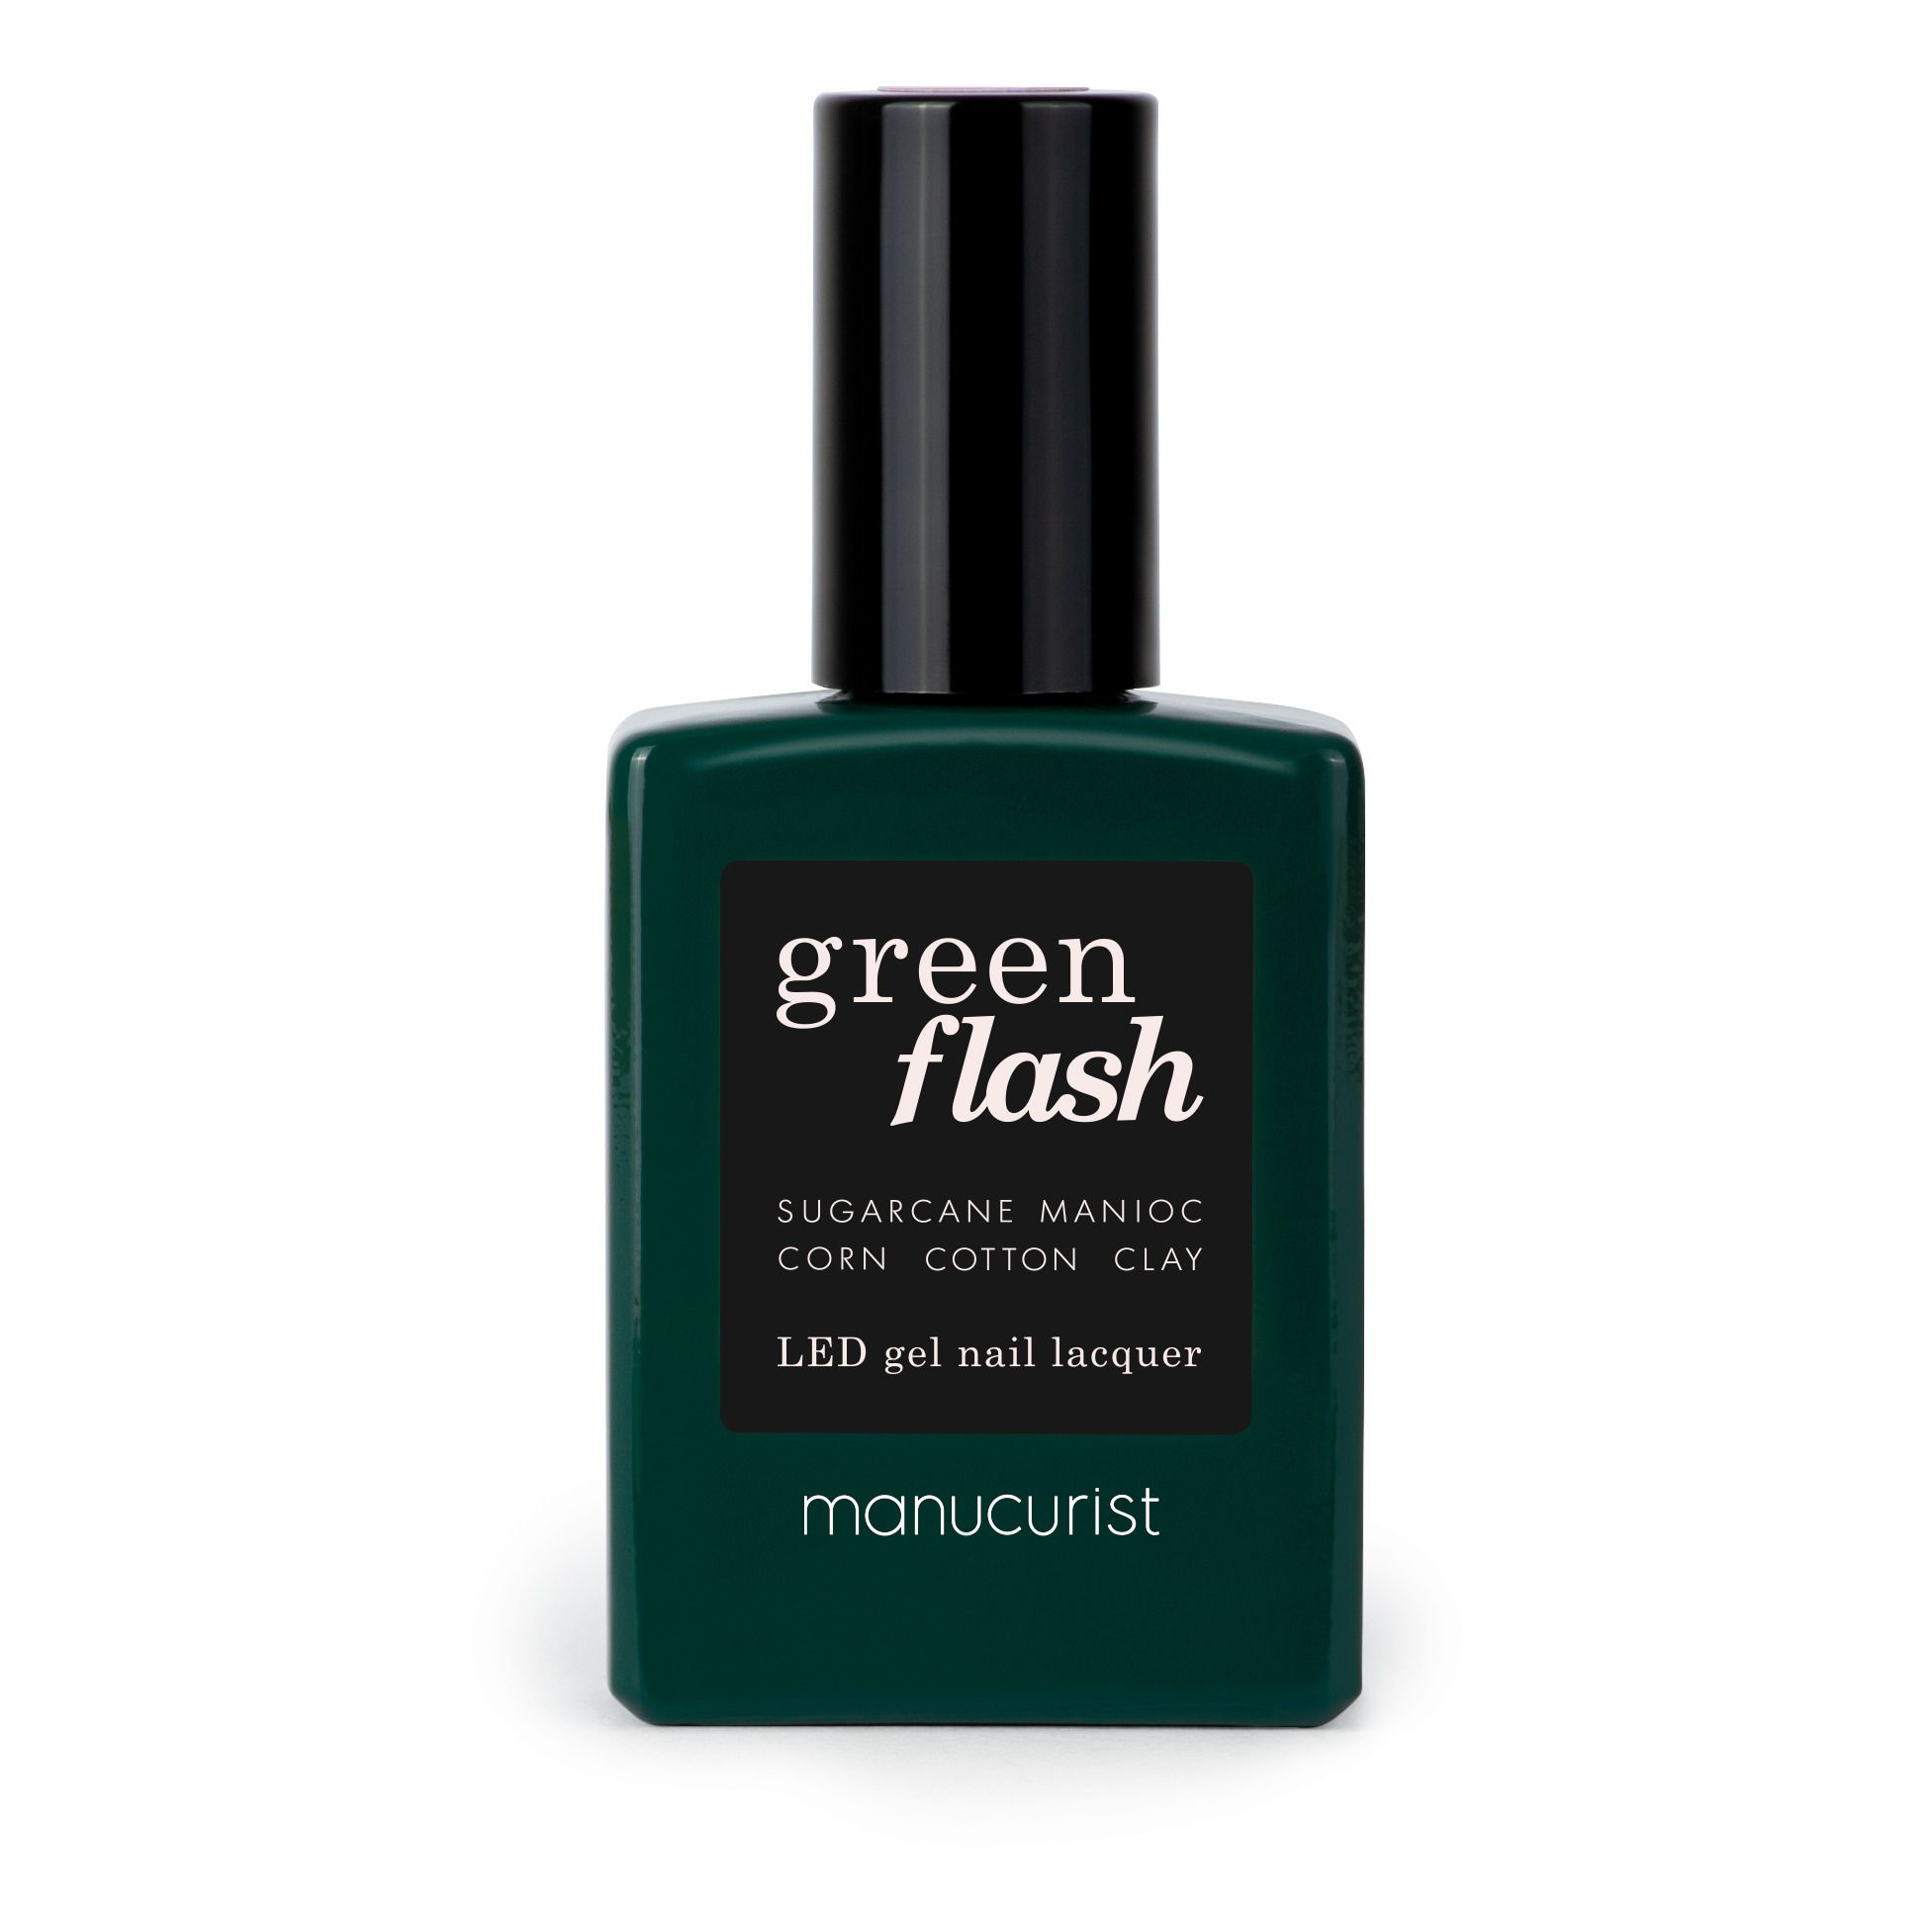 Manucurist - Vernis à ongles semi-permanent Green Flash - 15 ml - Licorice